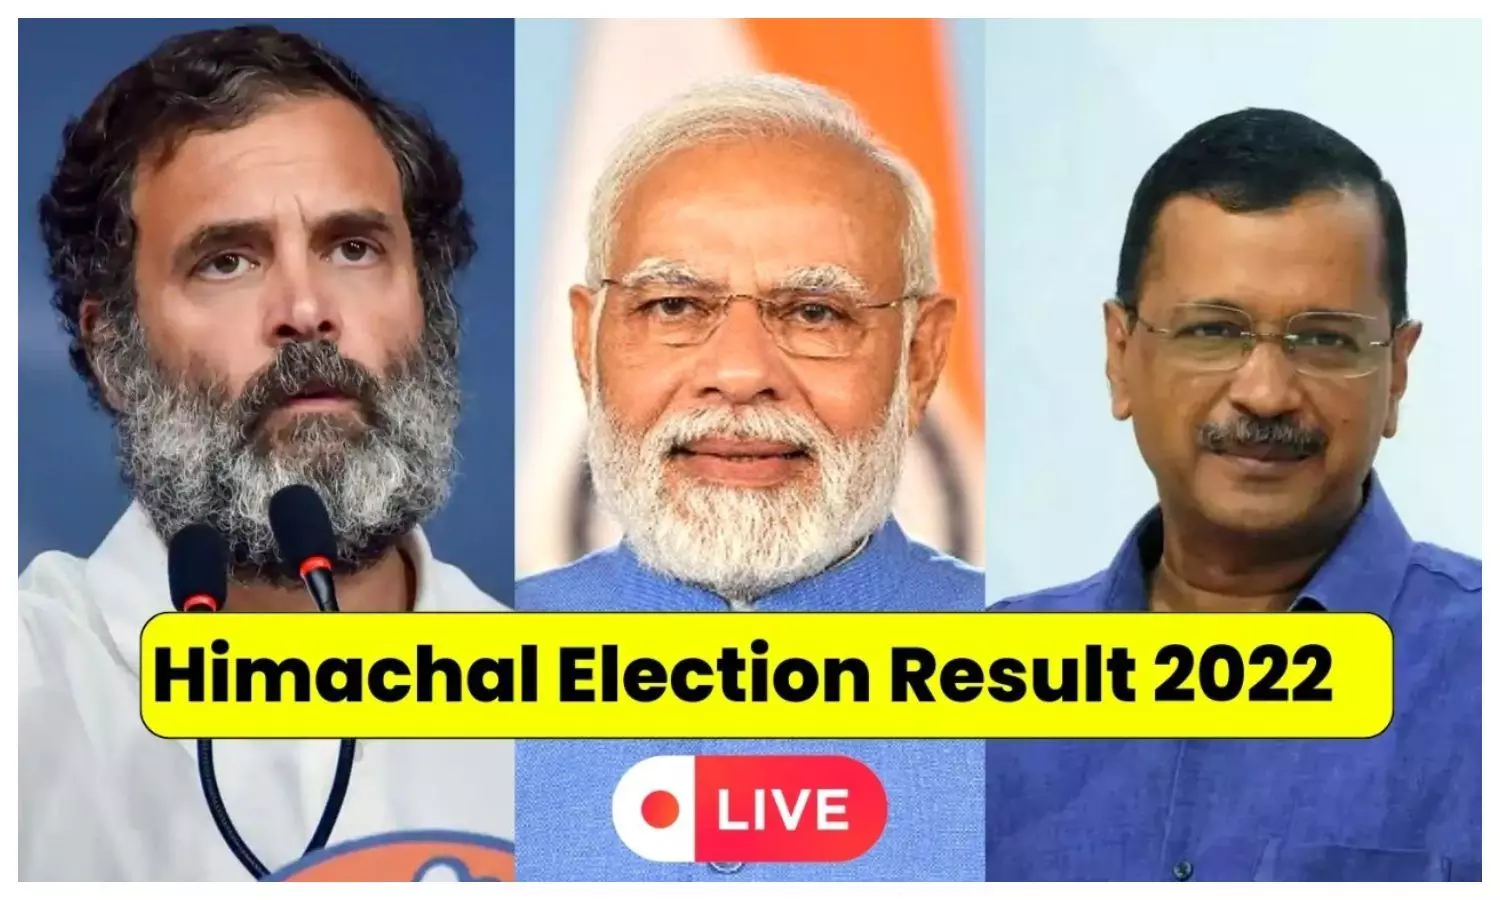 Himachal Pradesh Election Result 2022 Live